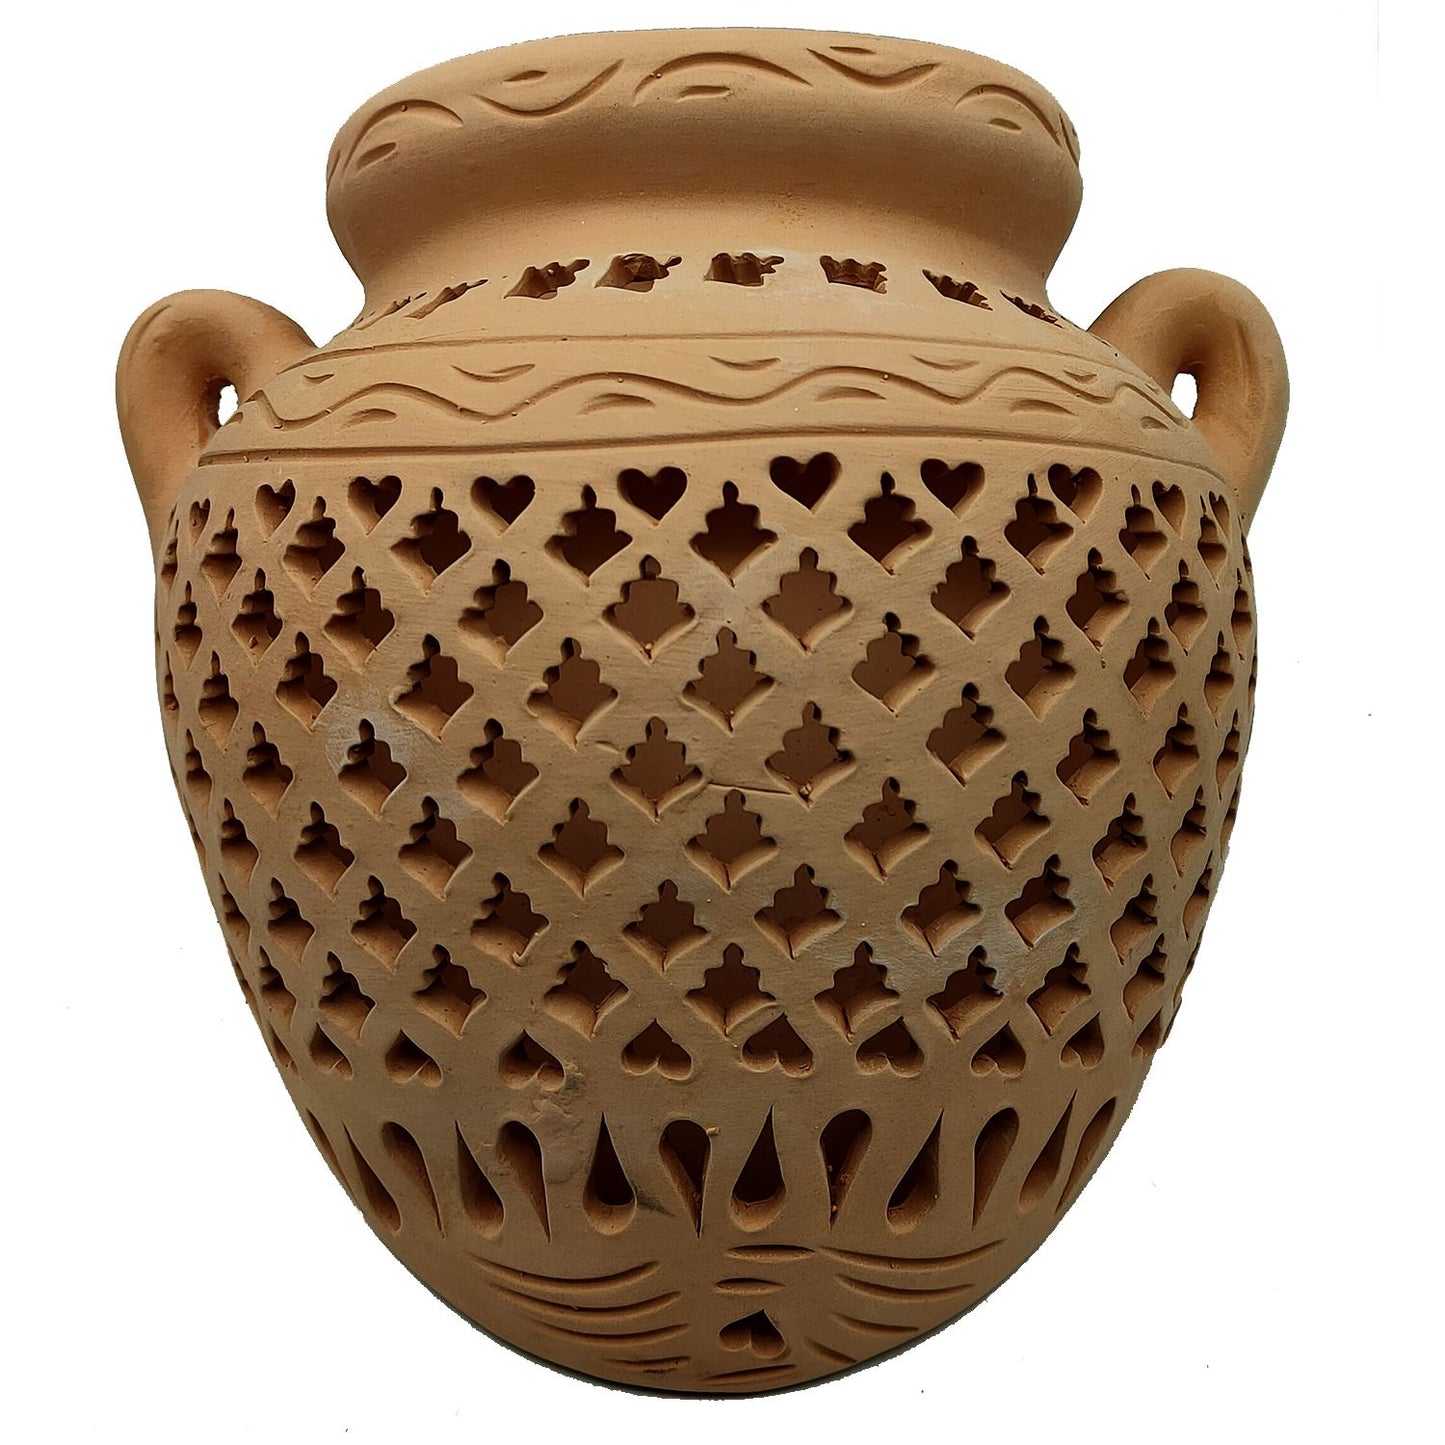 Vaso Anfora Etnico Tunisino Marocchino Ceramica Terracotta Orientale 3009221500